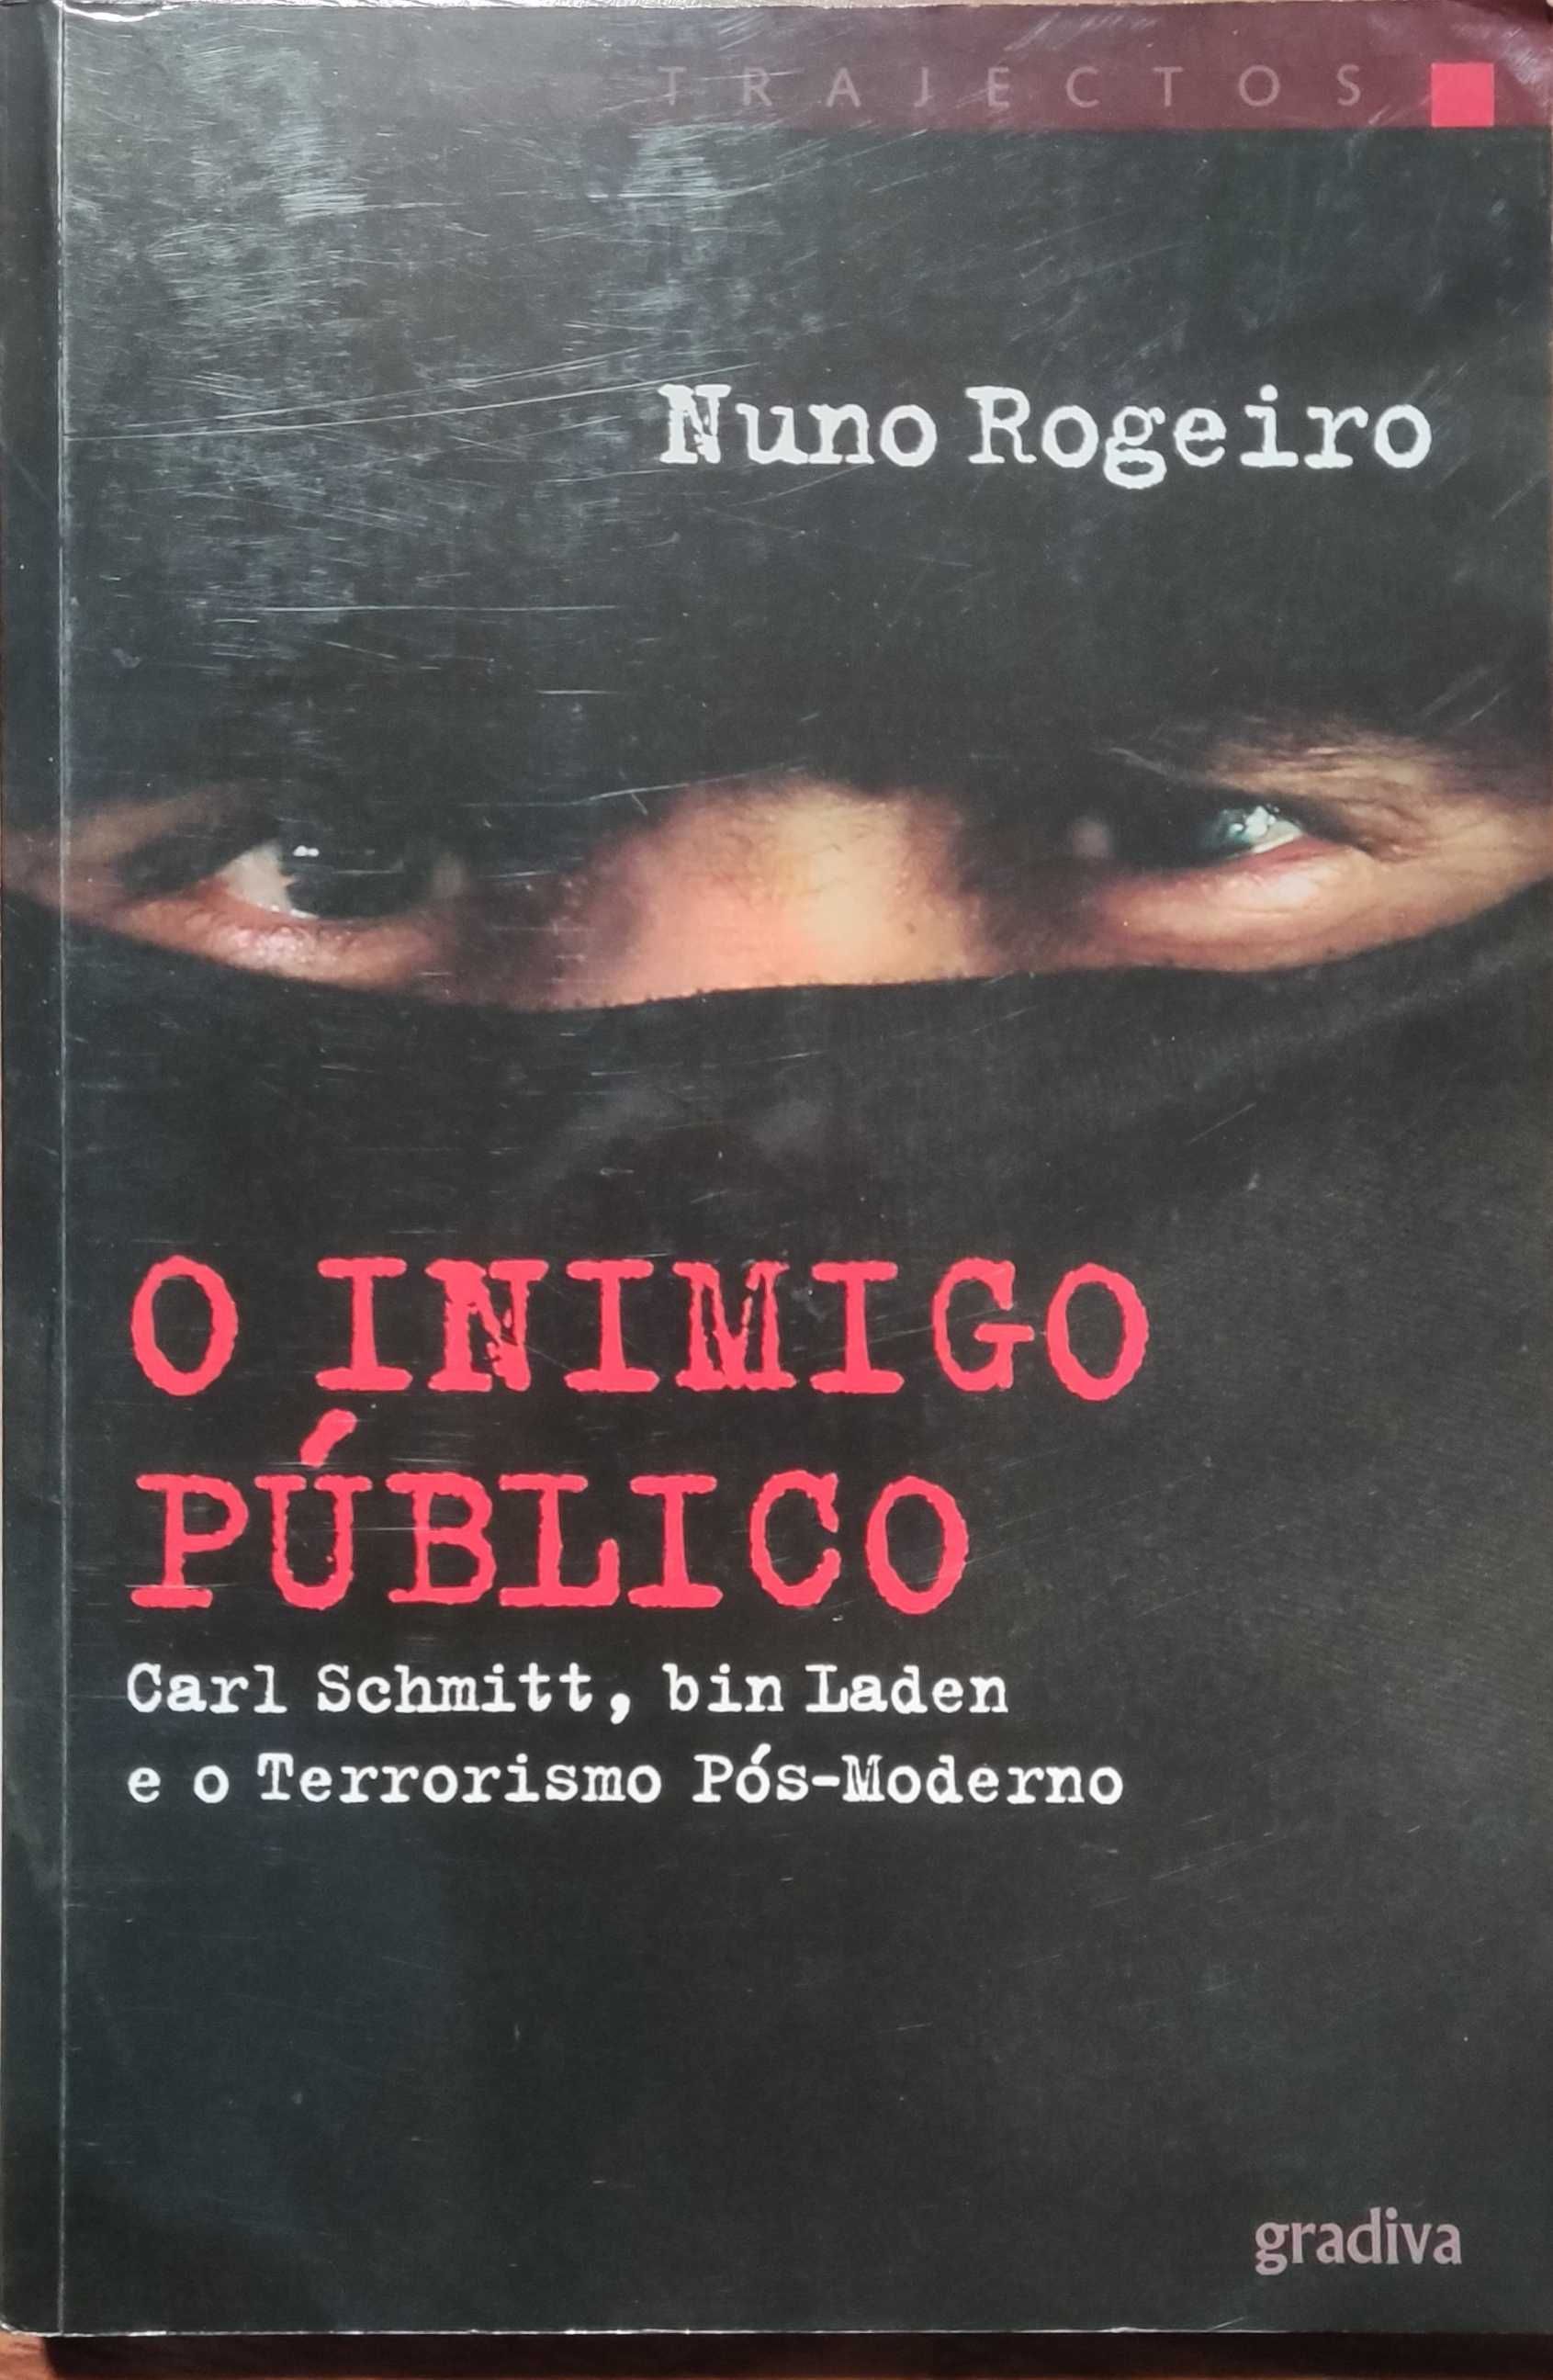 Livro "O Inimigo Público" de Nuno Rogeiro